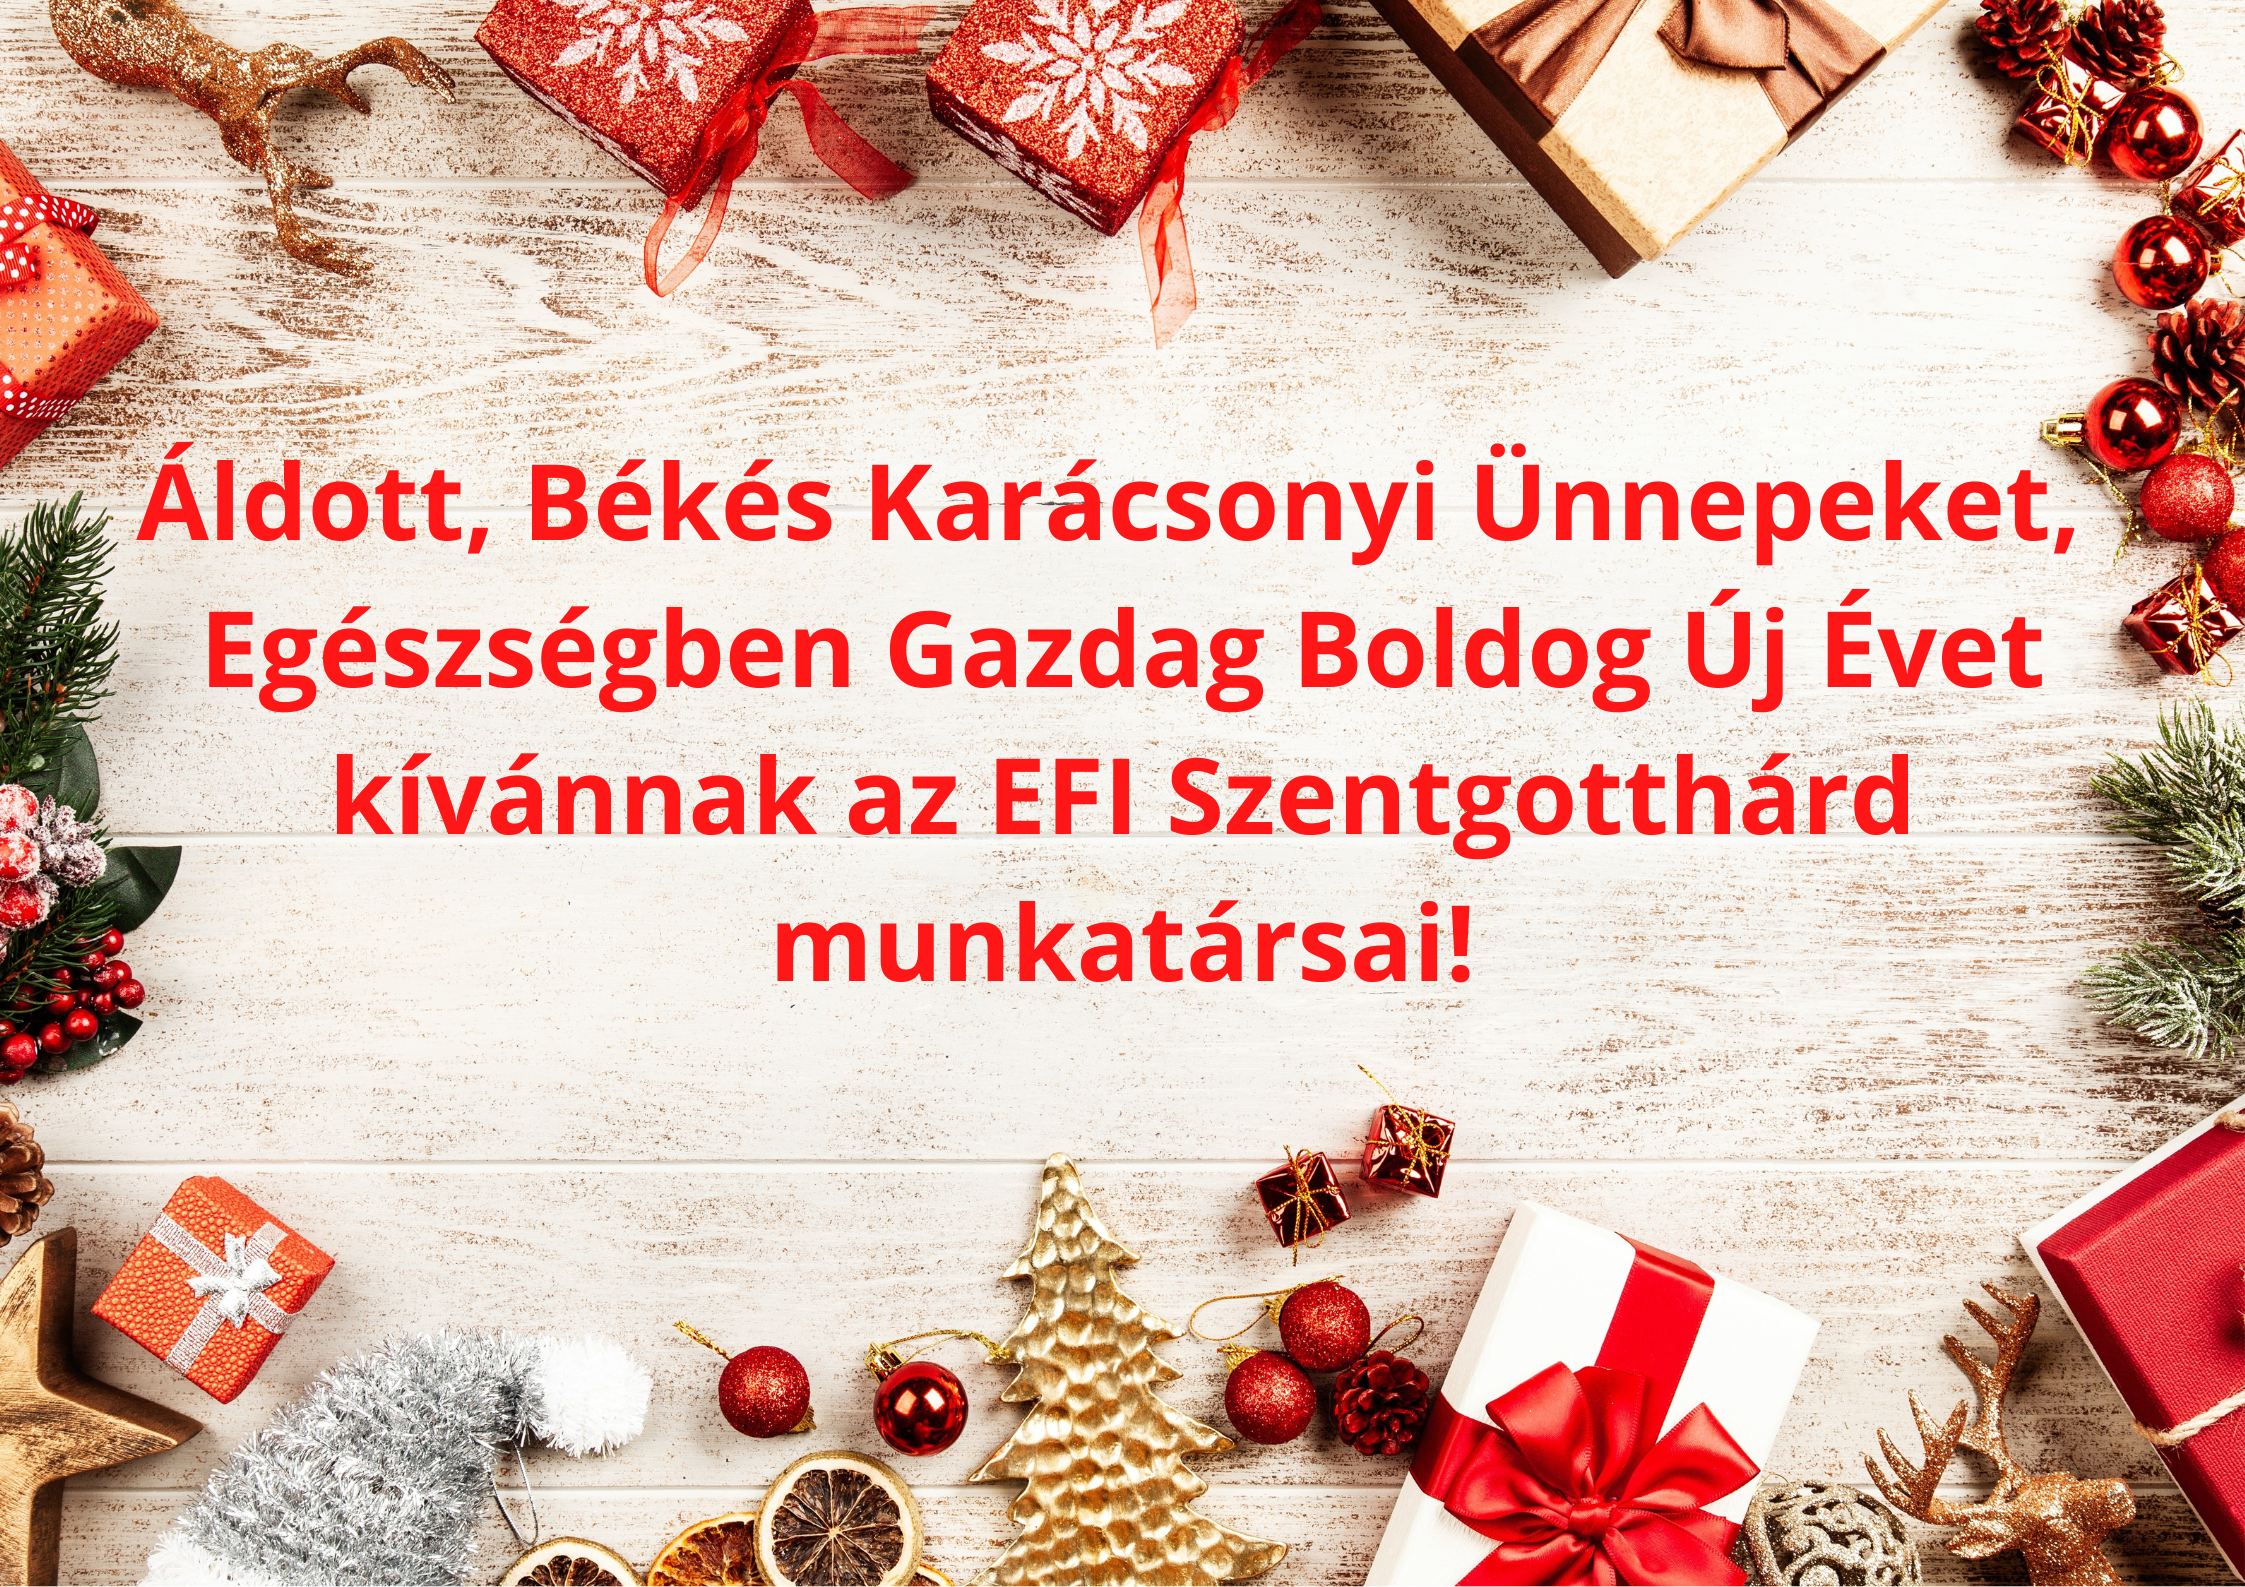 Áldott, Békés, Karácsonyi Ünnepeket, Egészségben Gazdag Boldog Új Évet kívánnak az EFI Szentgotthárd munkatársai!